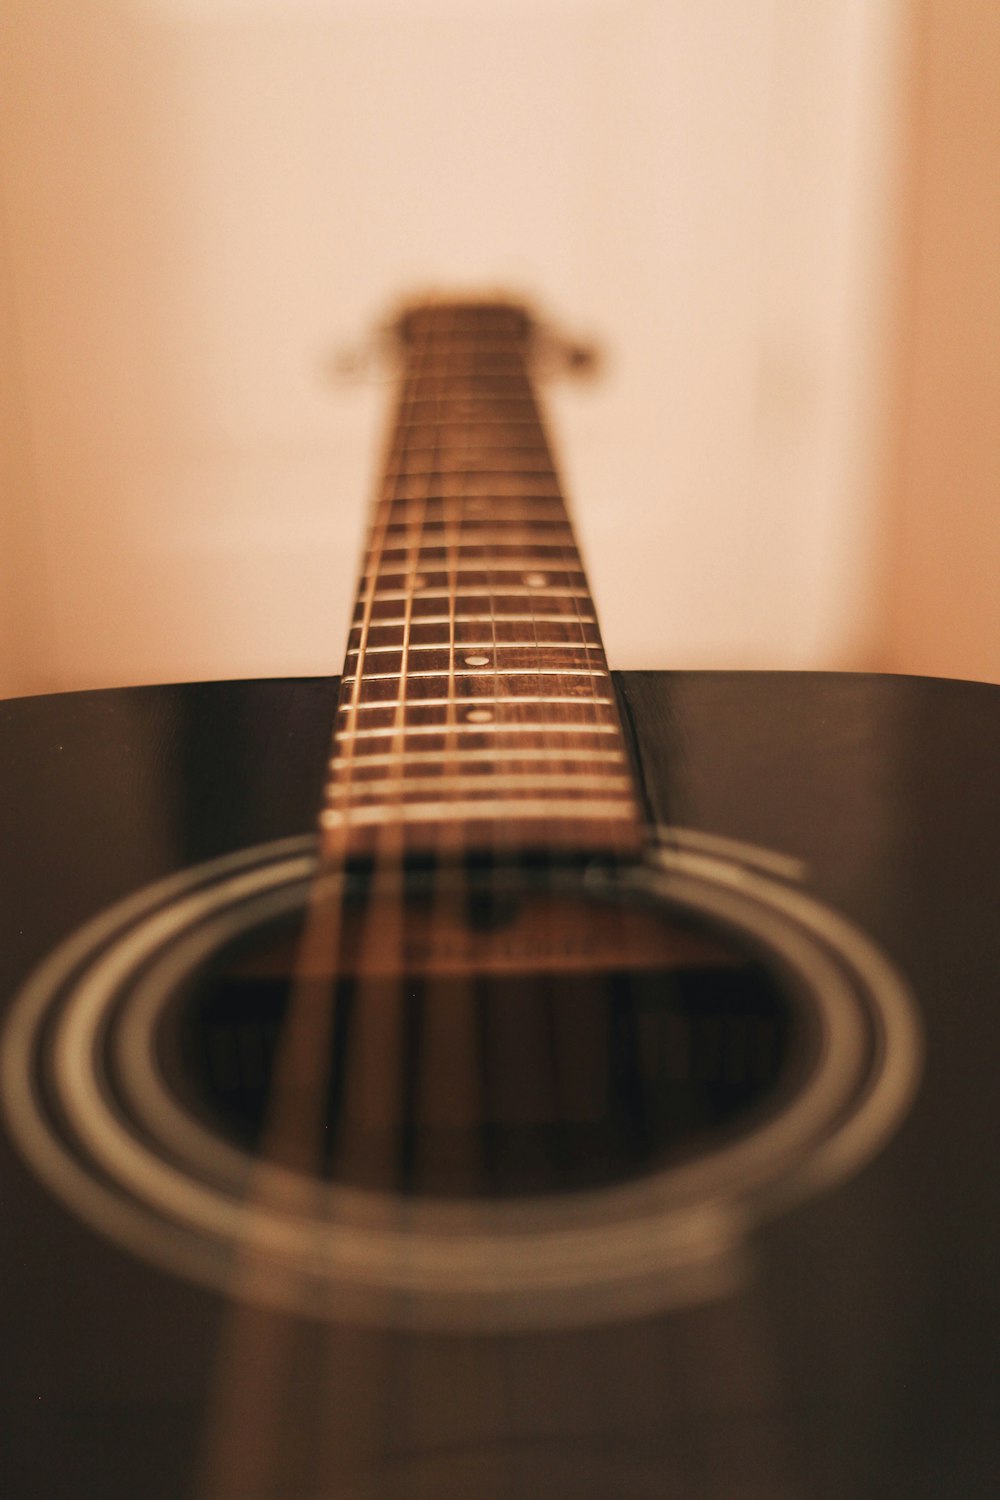 Fotografia em close-up da guitarra acústica preta dreadnought